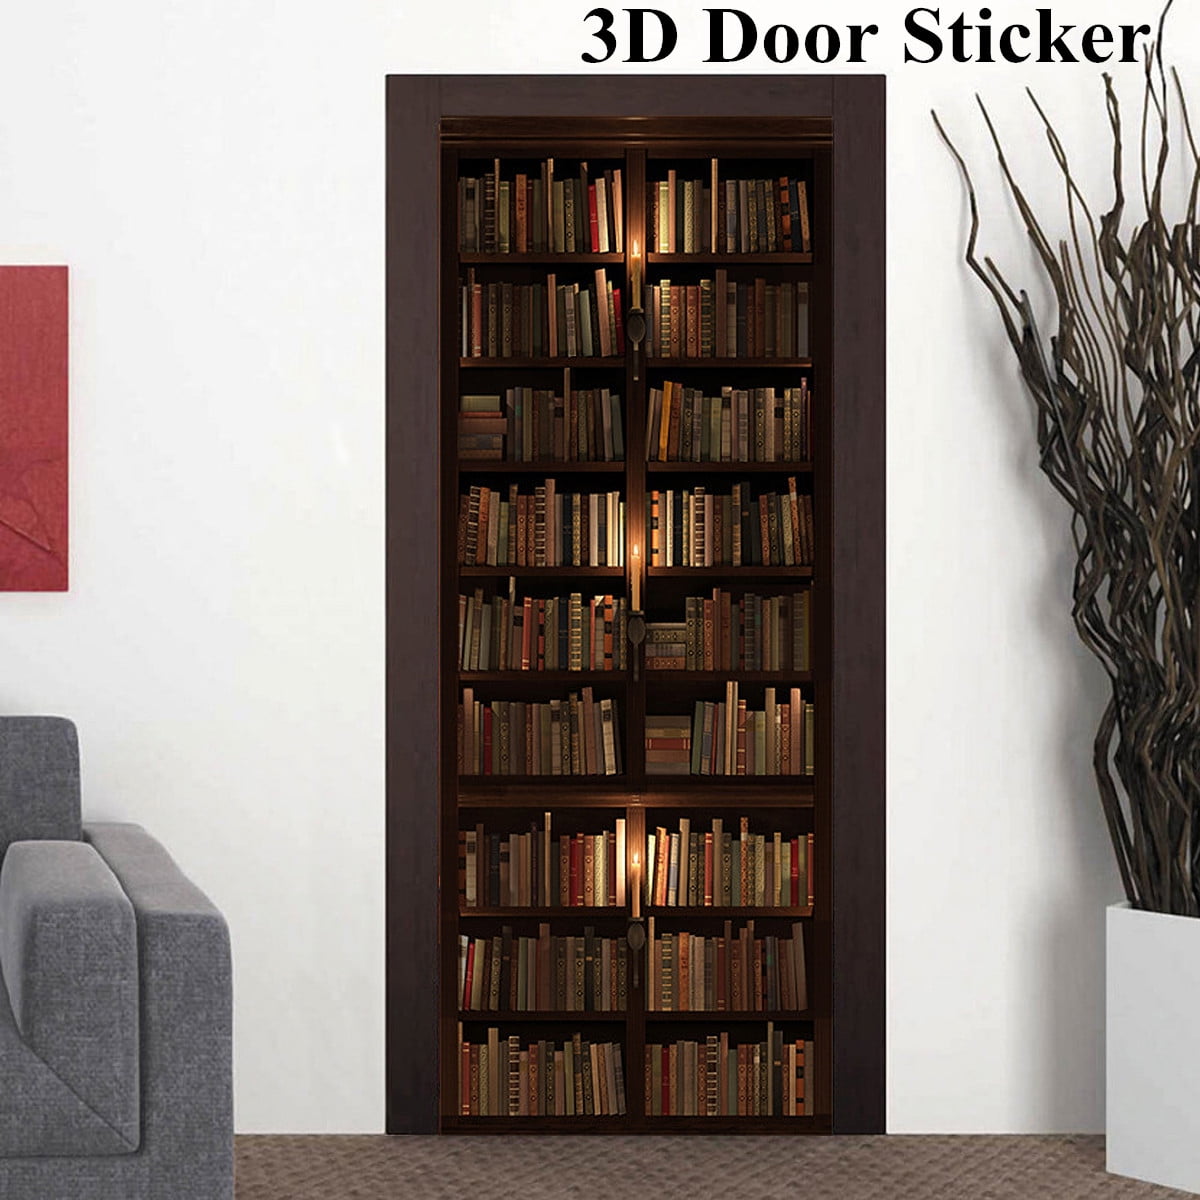 Removable Bookshelf 3D Decal WALL STICKER Home Decor Art Wallpaper ...